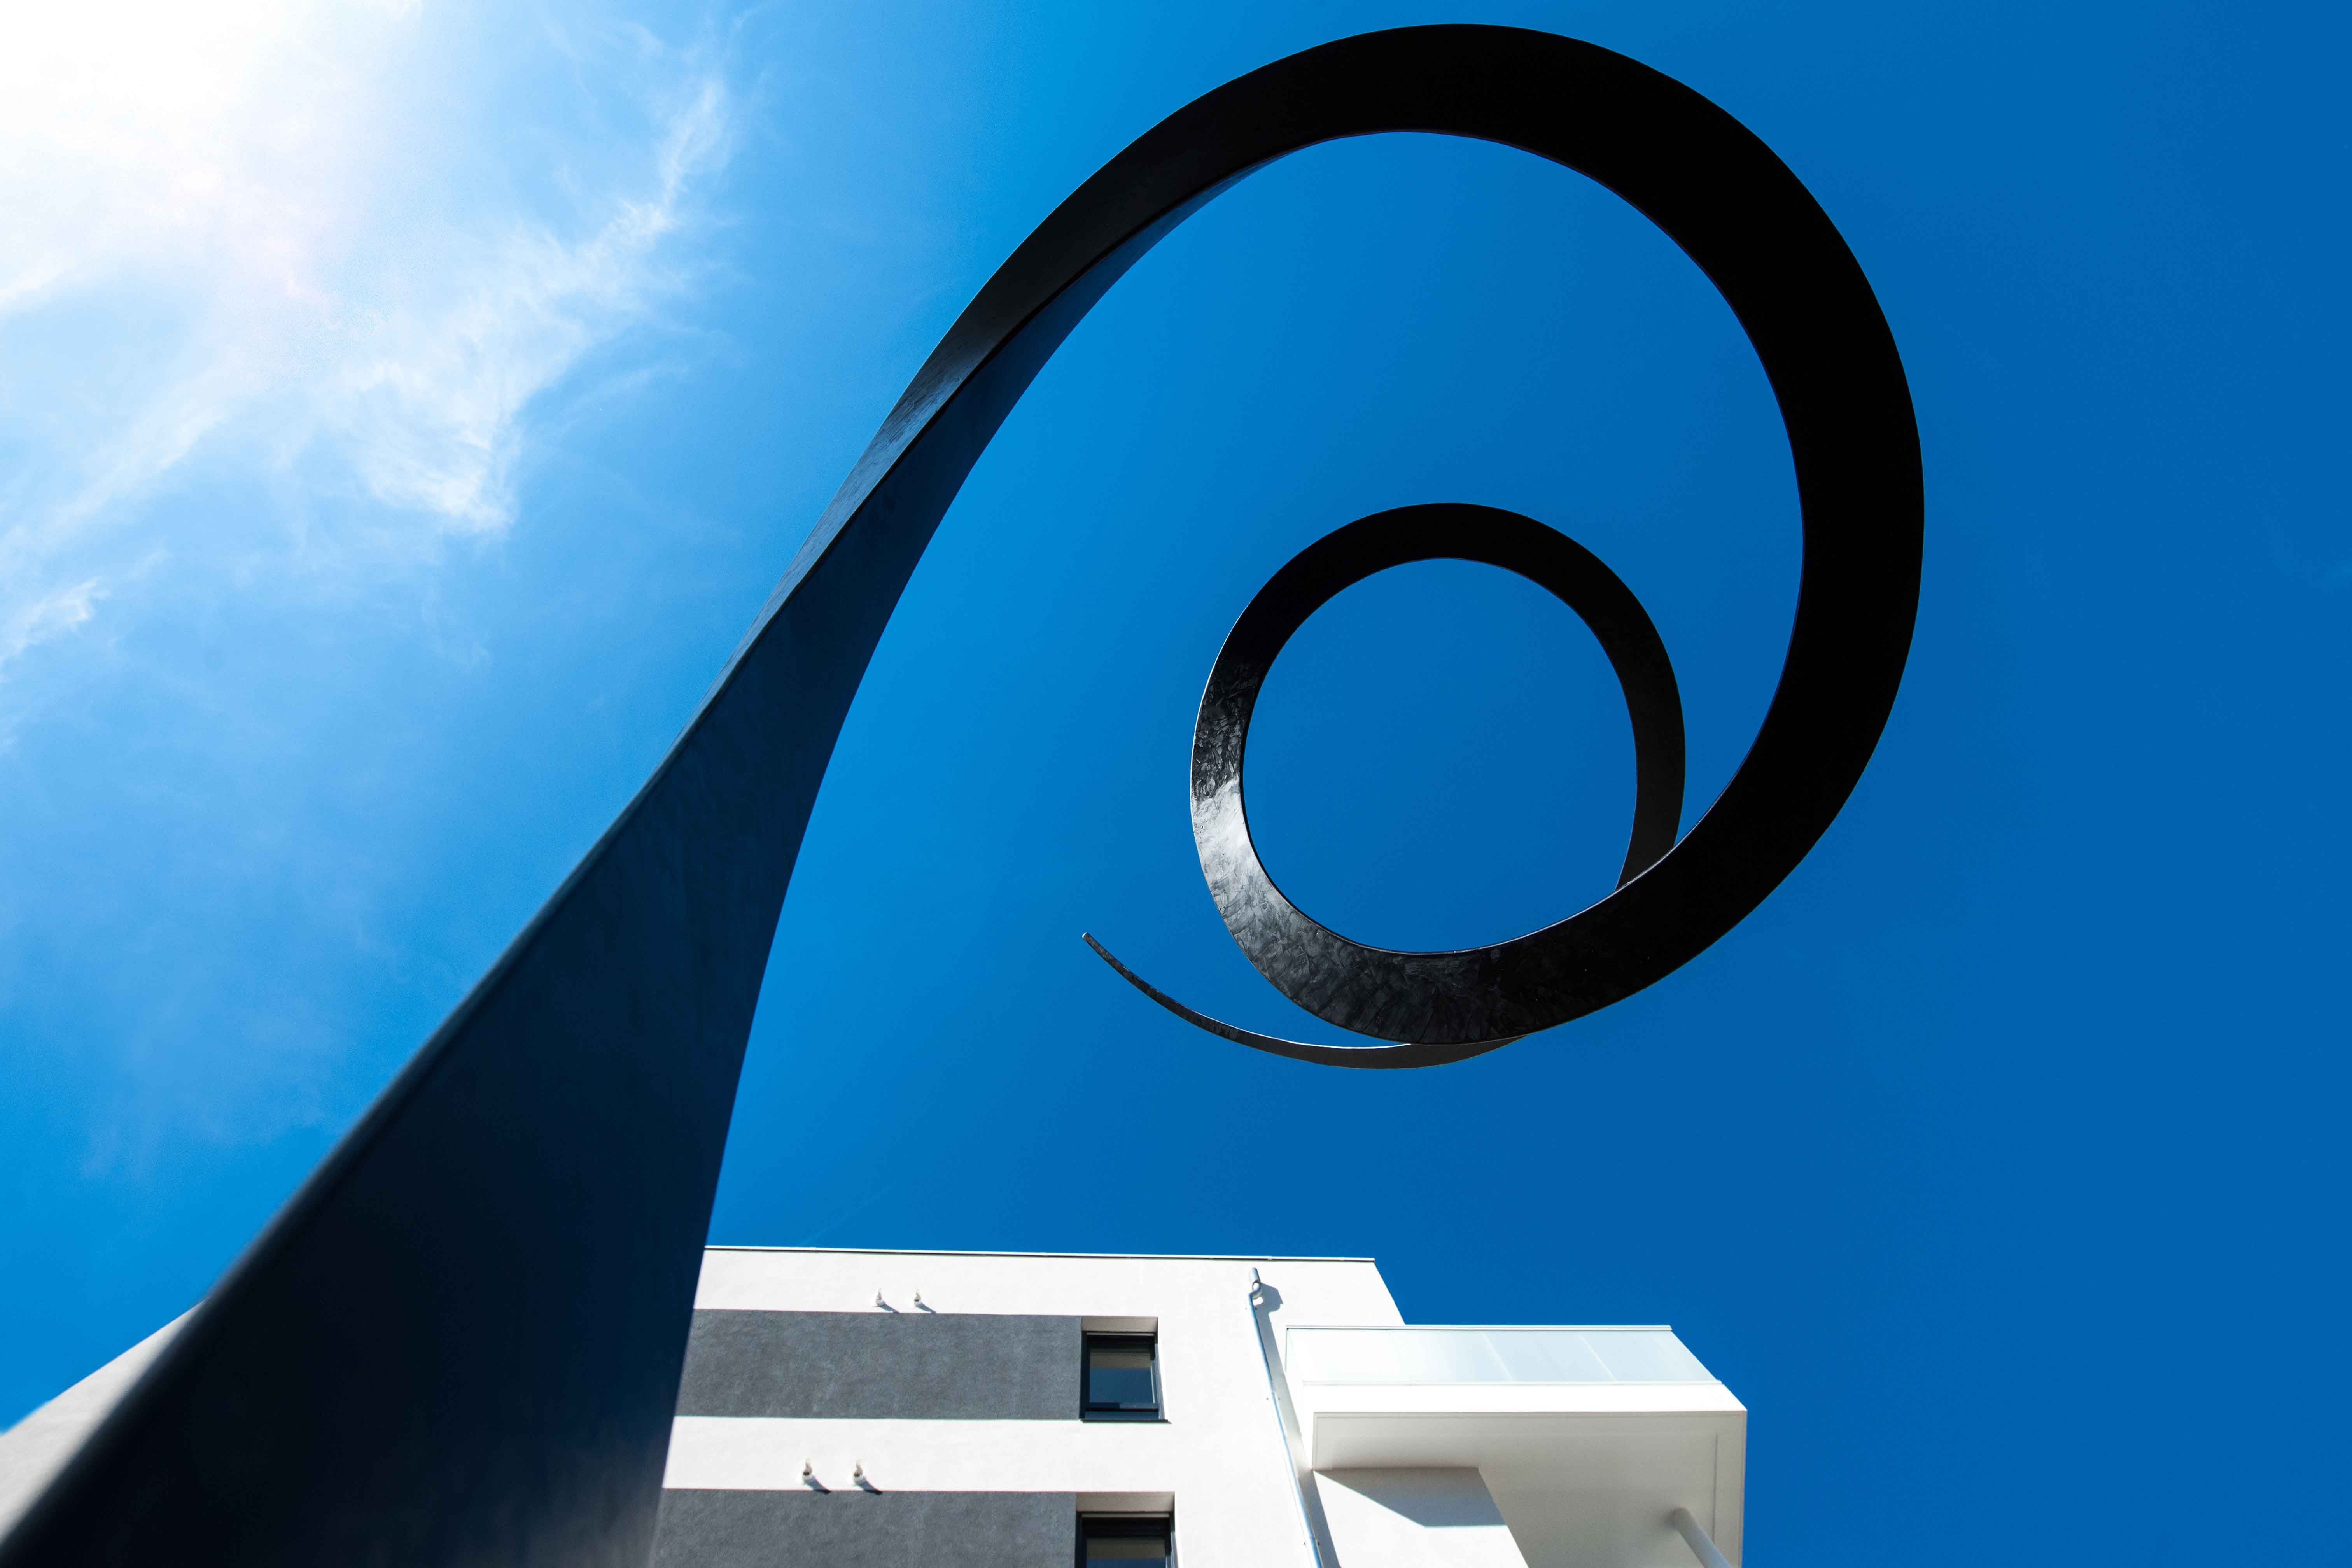 Mise en oeuvre d’art sculpture batiment promoteur immobilier ciel bleu soleil metal béton